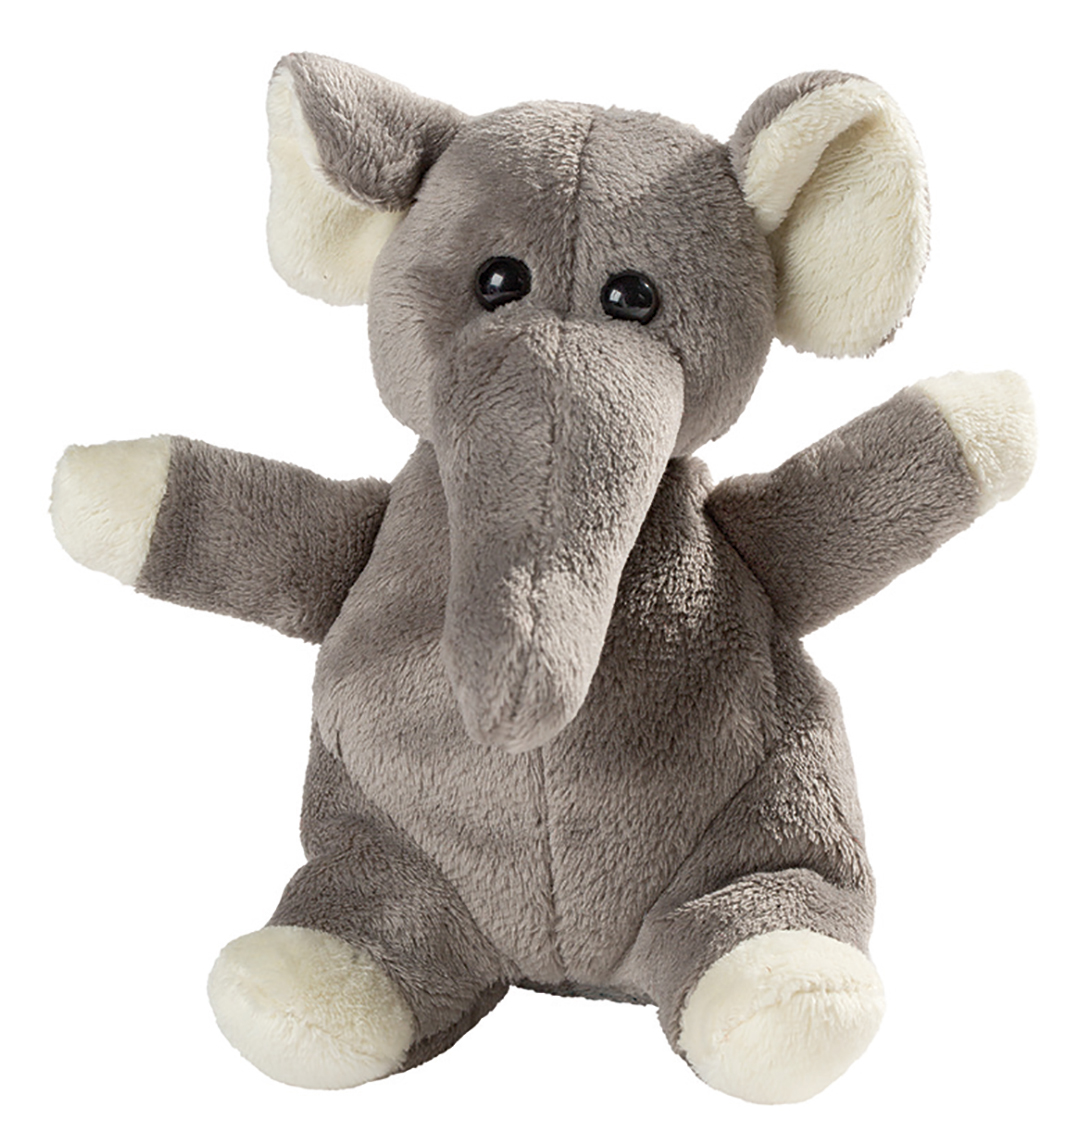 Wolle plush elephant